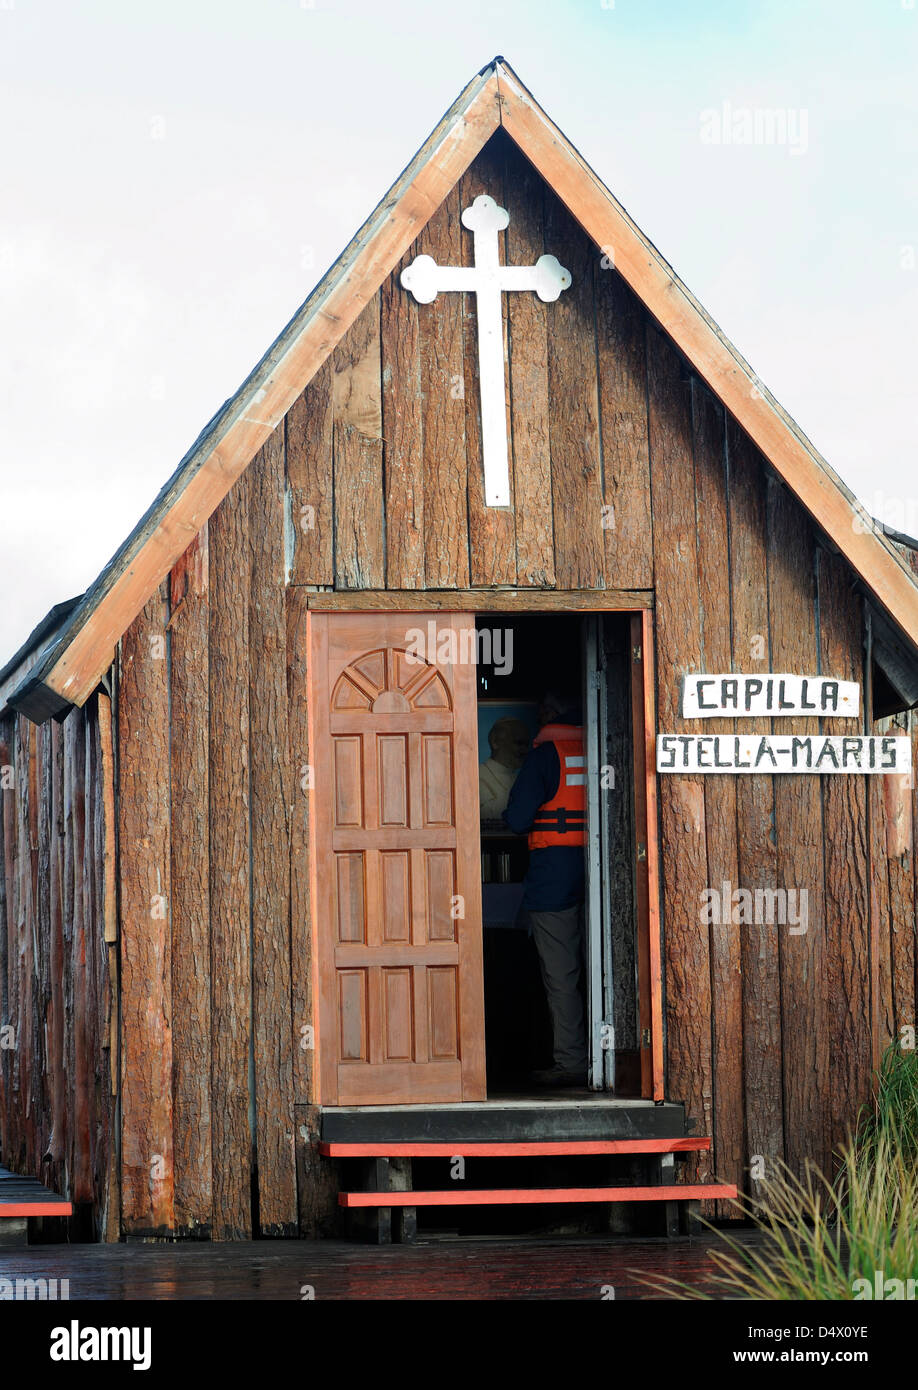 La piccola chiesa della Capella Stella Maris nei pressi di Capo Horn nel Capo Horn Parco Nazionale. Cabo de Hornos, Isla Hornos. Cile Foto Stock